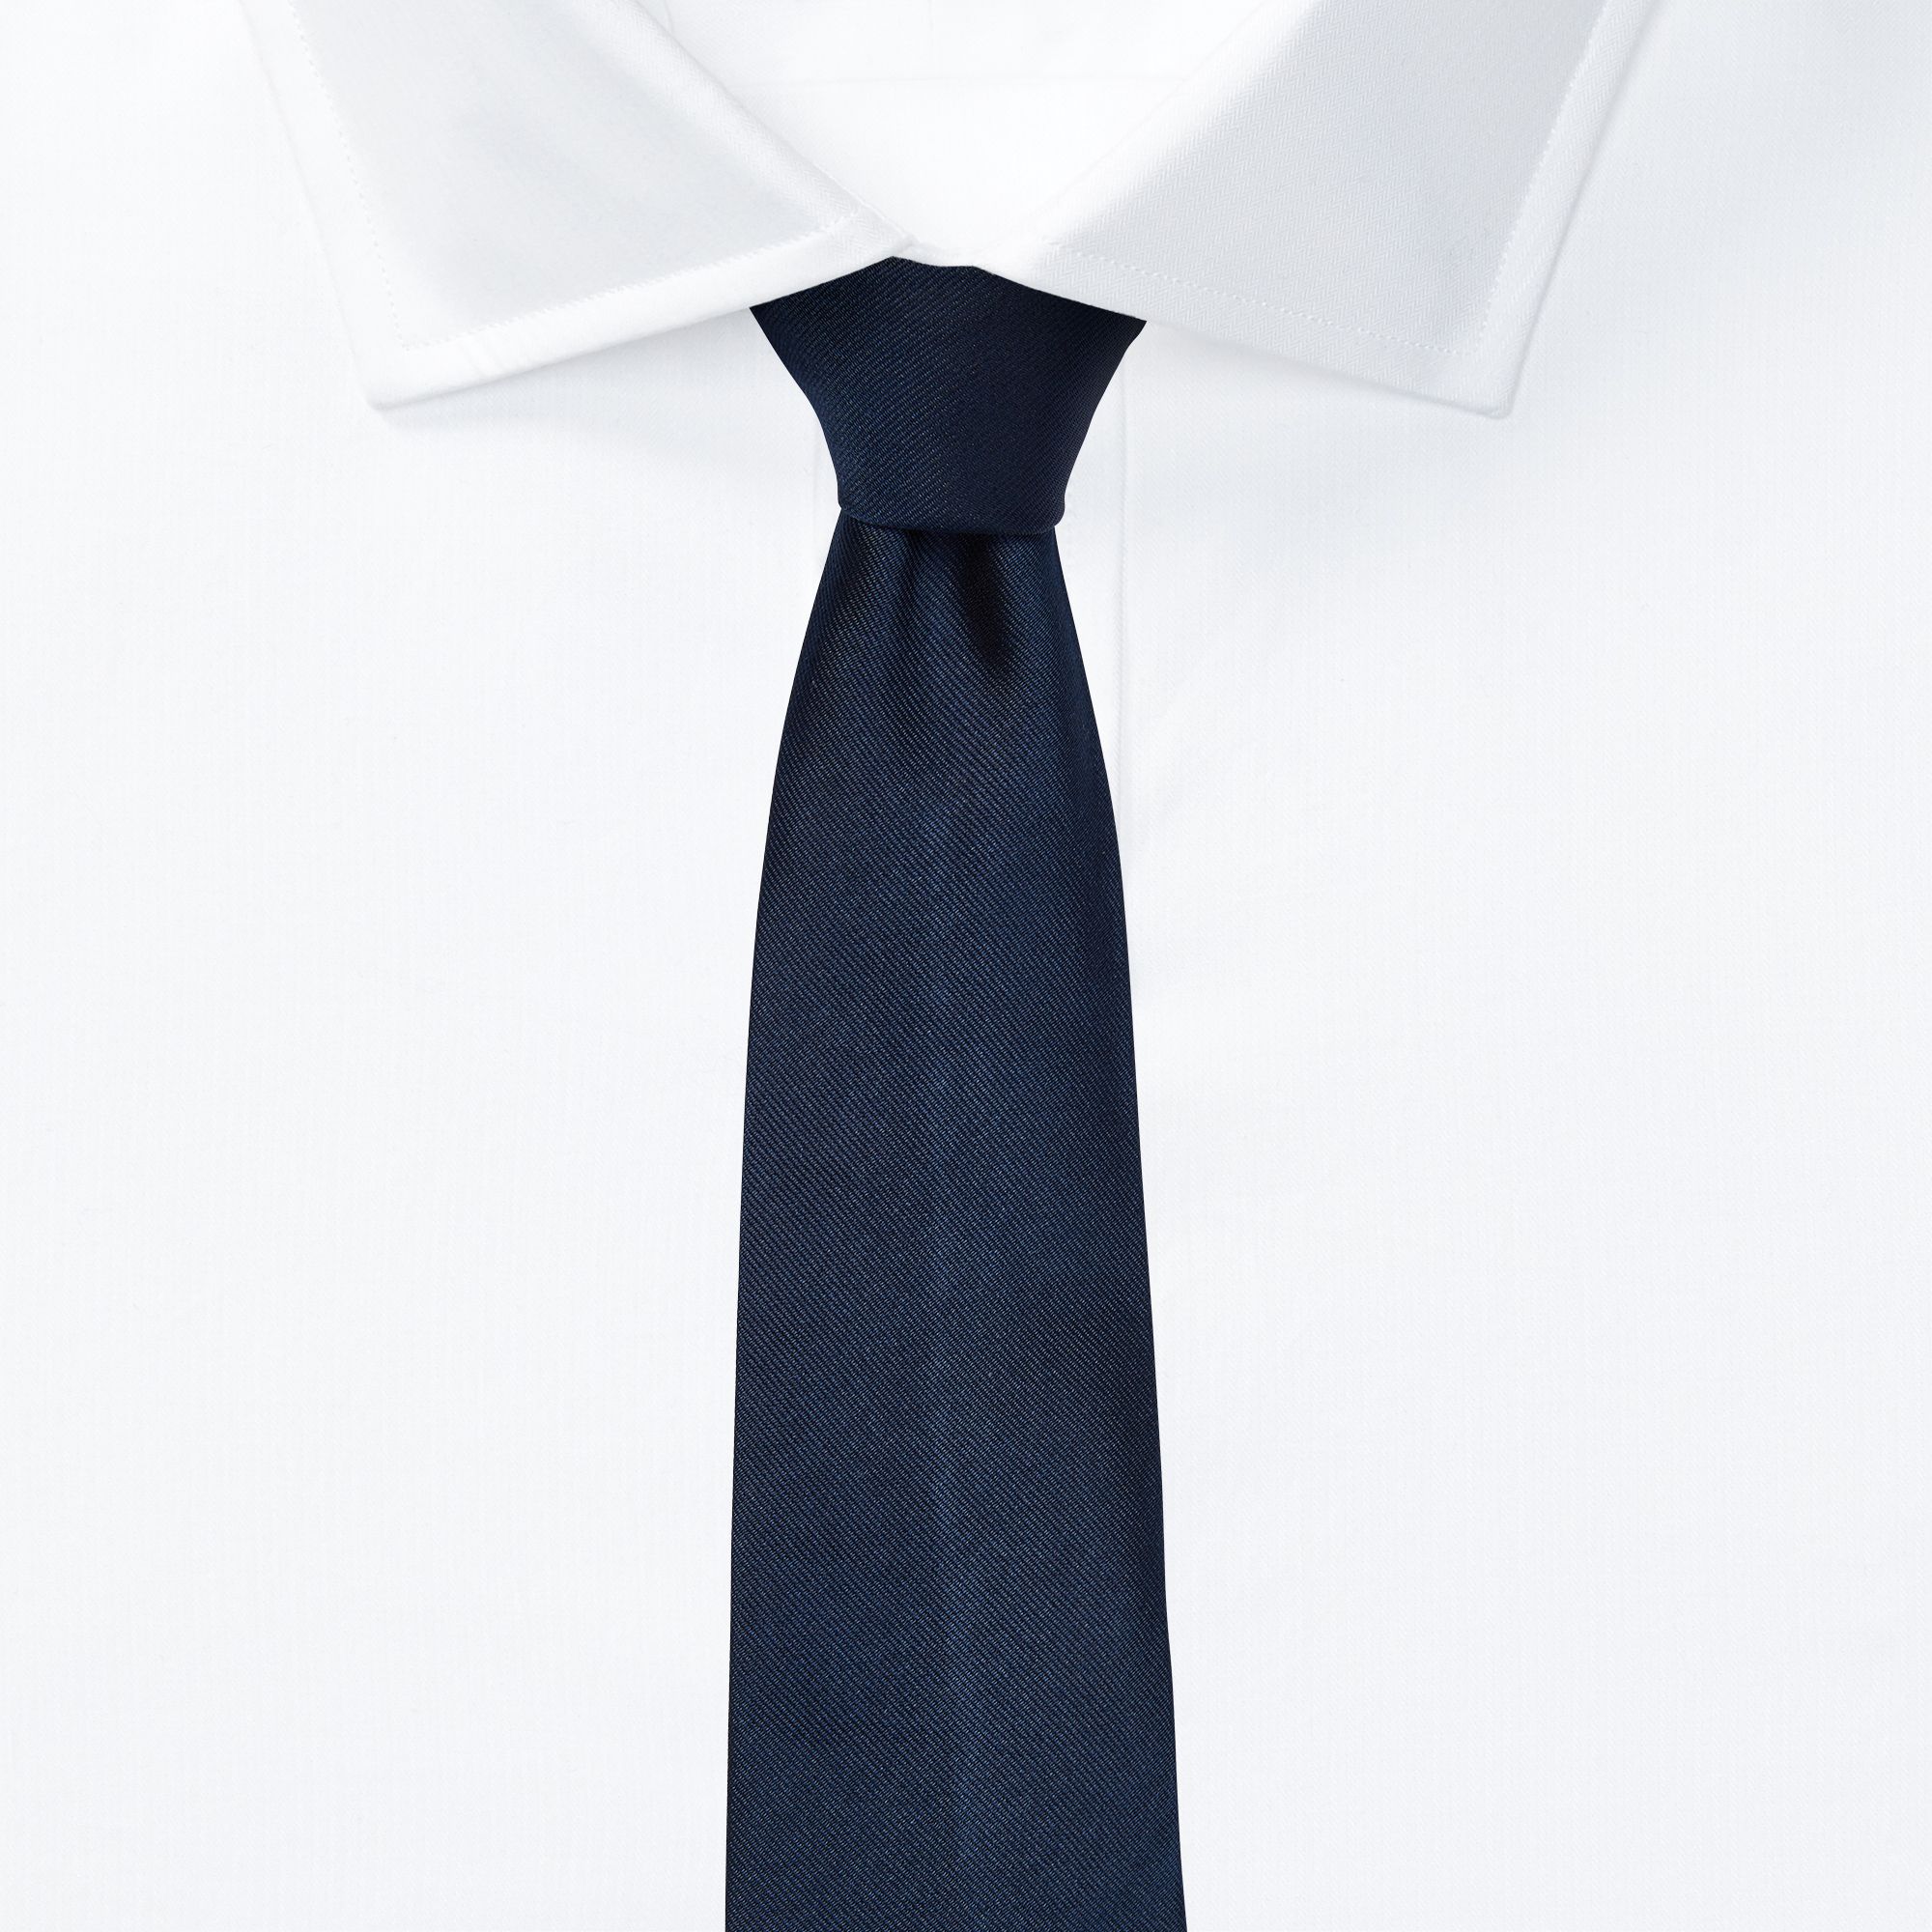 Come scegliere la cravatta giusta per la primavera estate 2019